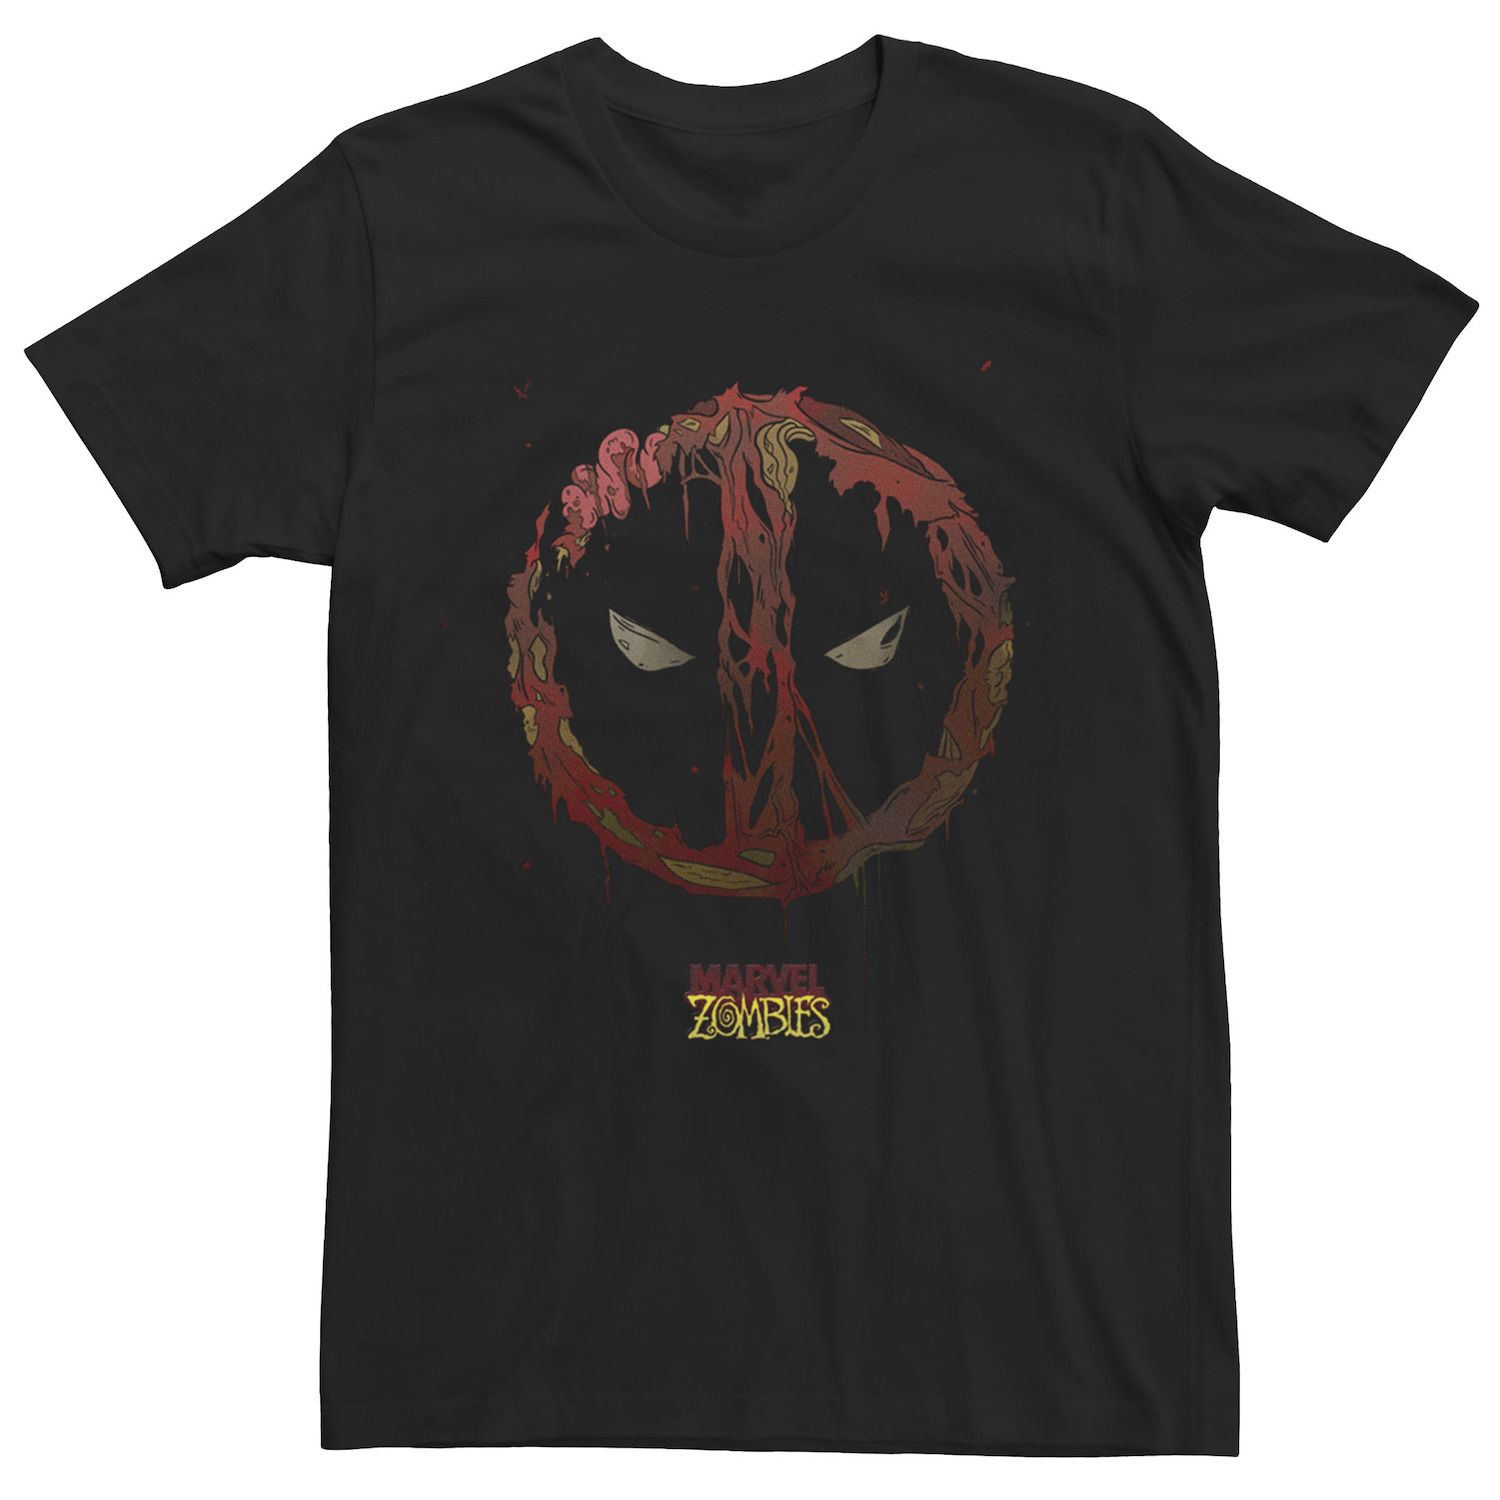 Мужская футболка с графическим логотипом Deadpool Zombies Zombies Marvel